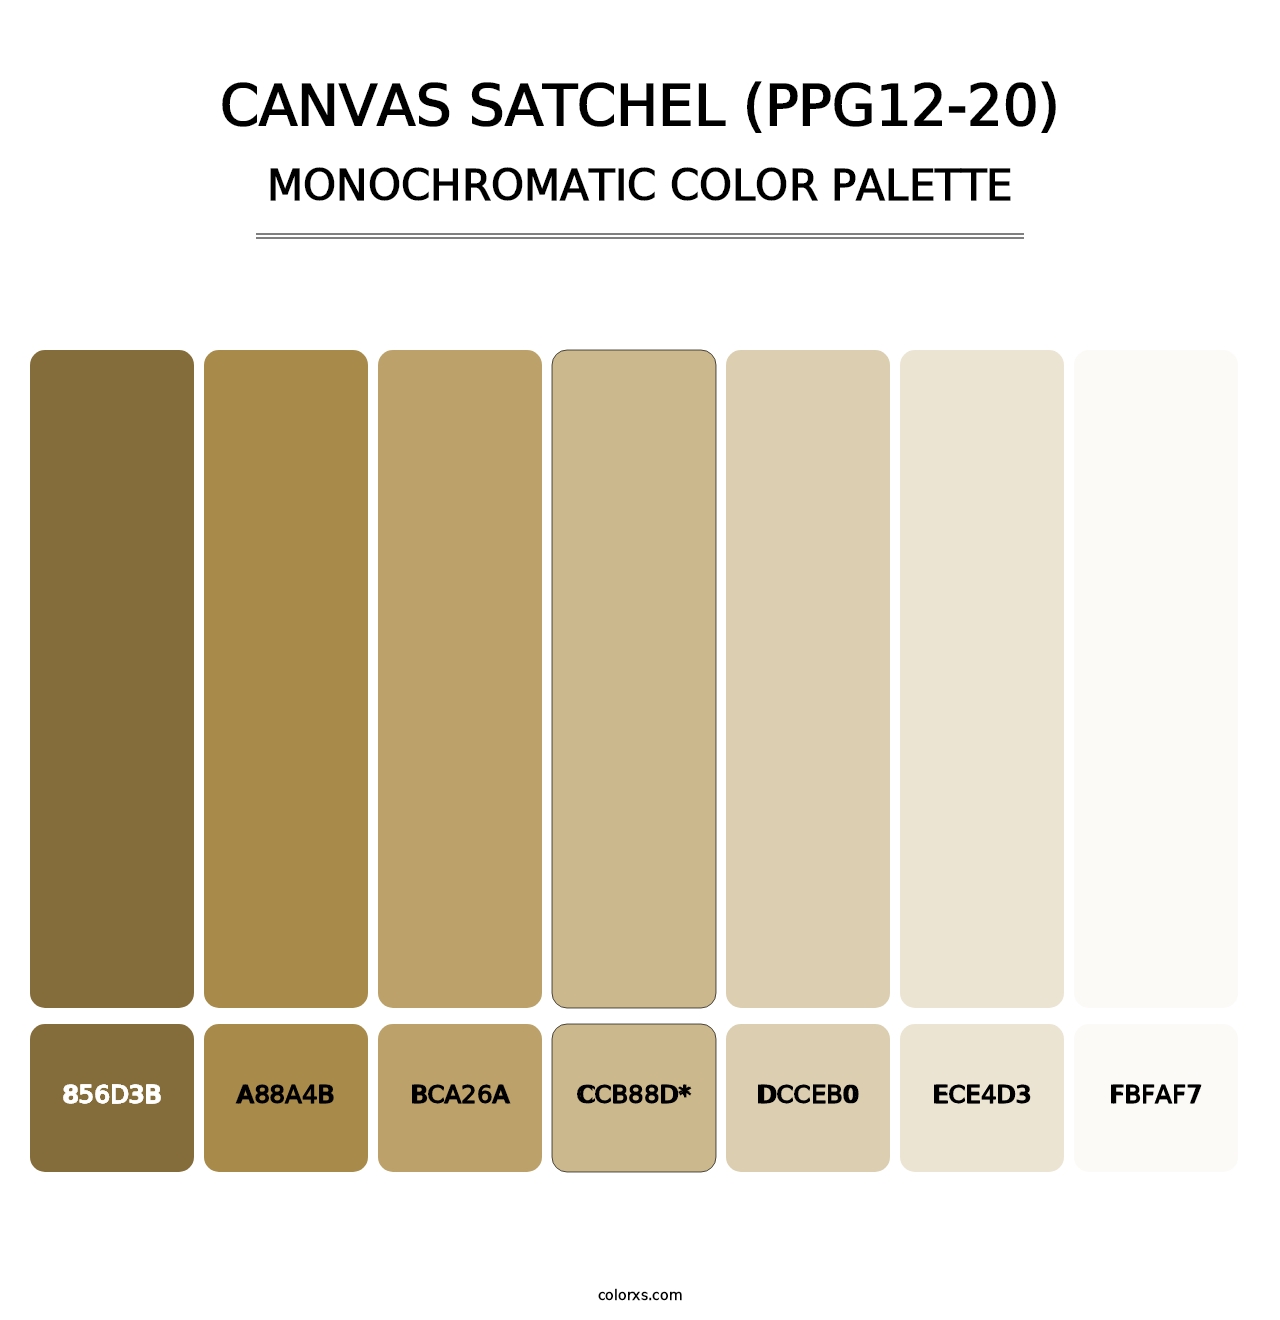 Canvas Satchel (PPG12-20) - Monochromatic Color Palette